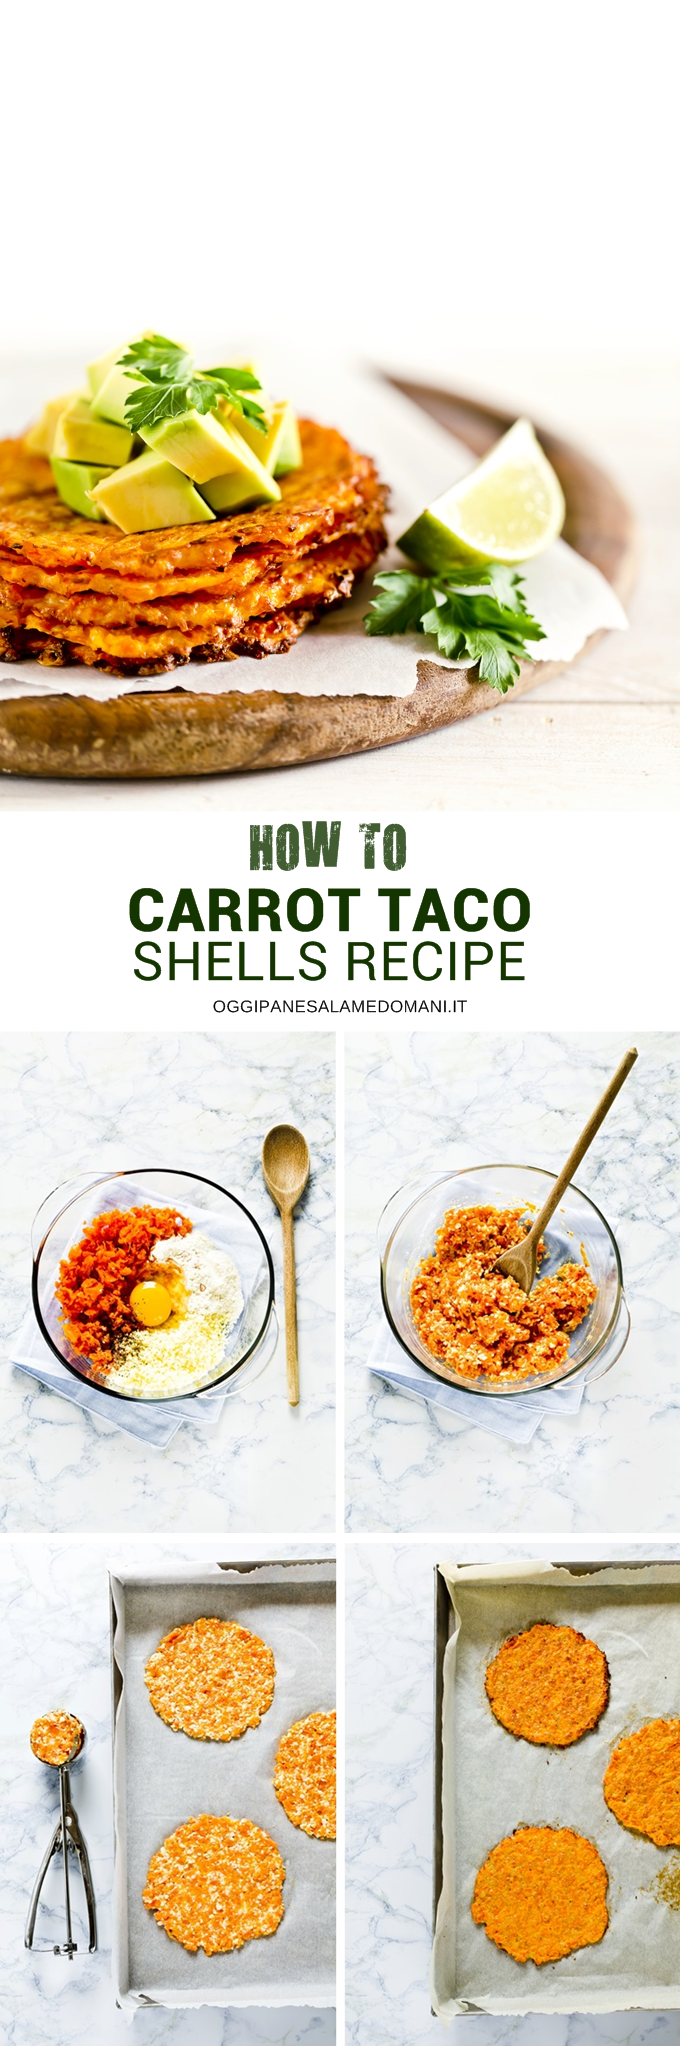 tacos - tacos di carote - carrot tacos shells - how to make carrot tacos shells - tacos vegetariani - veg tacos